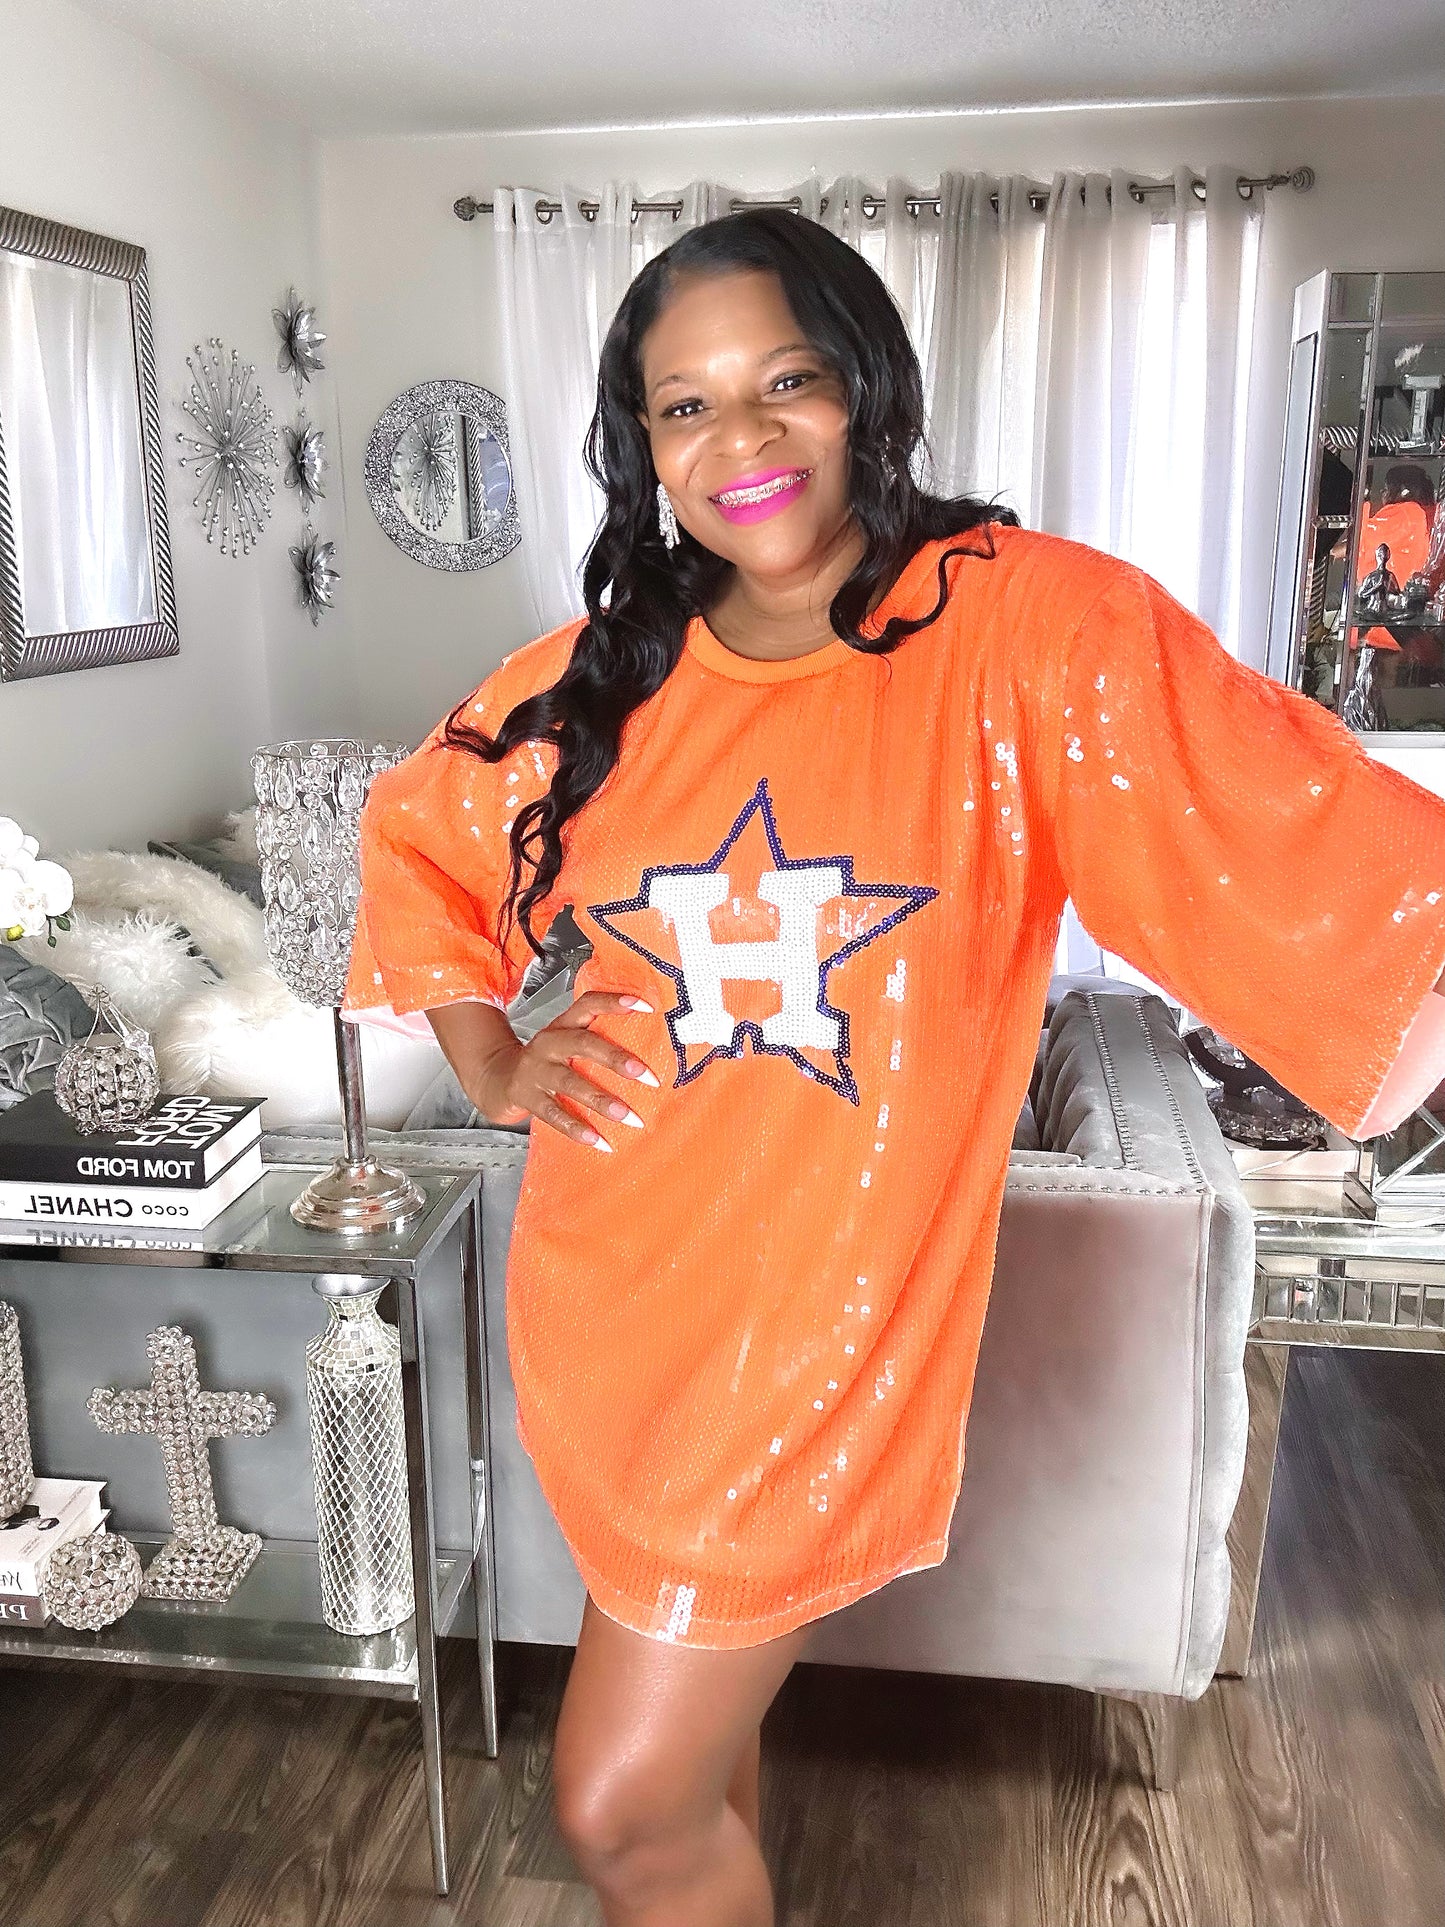 Houston Astros Sequin Dress – Unterrio's